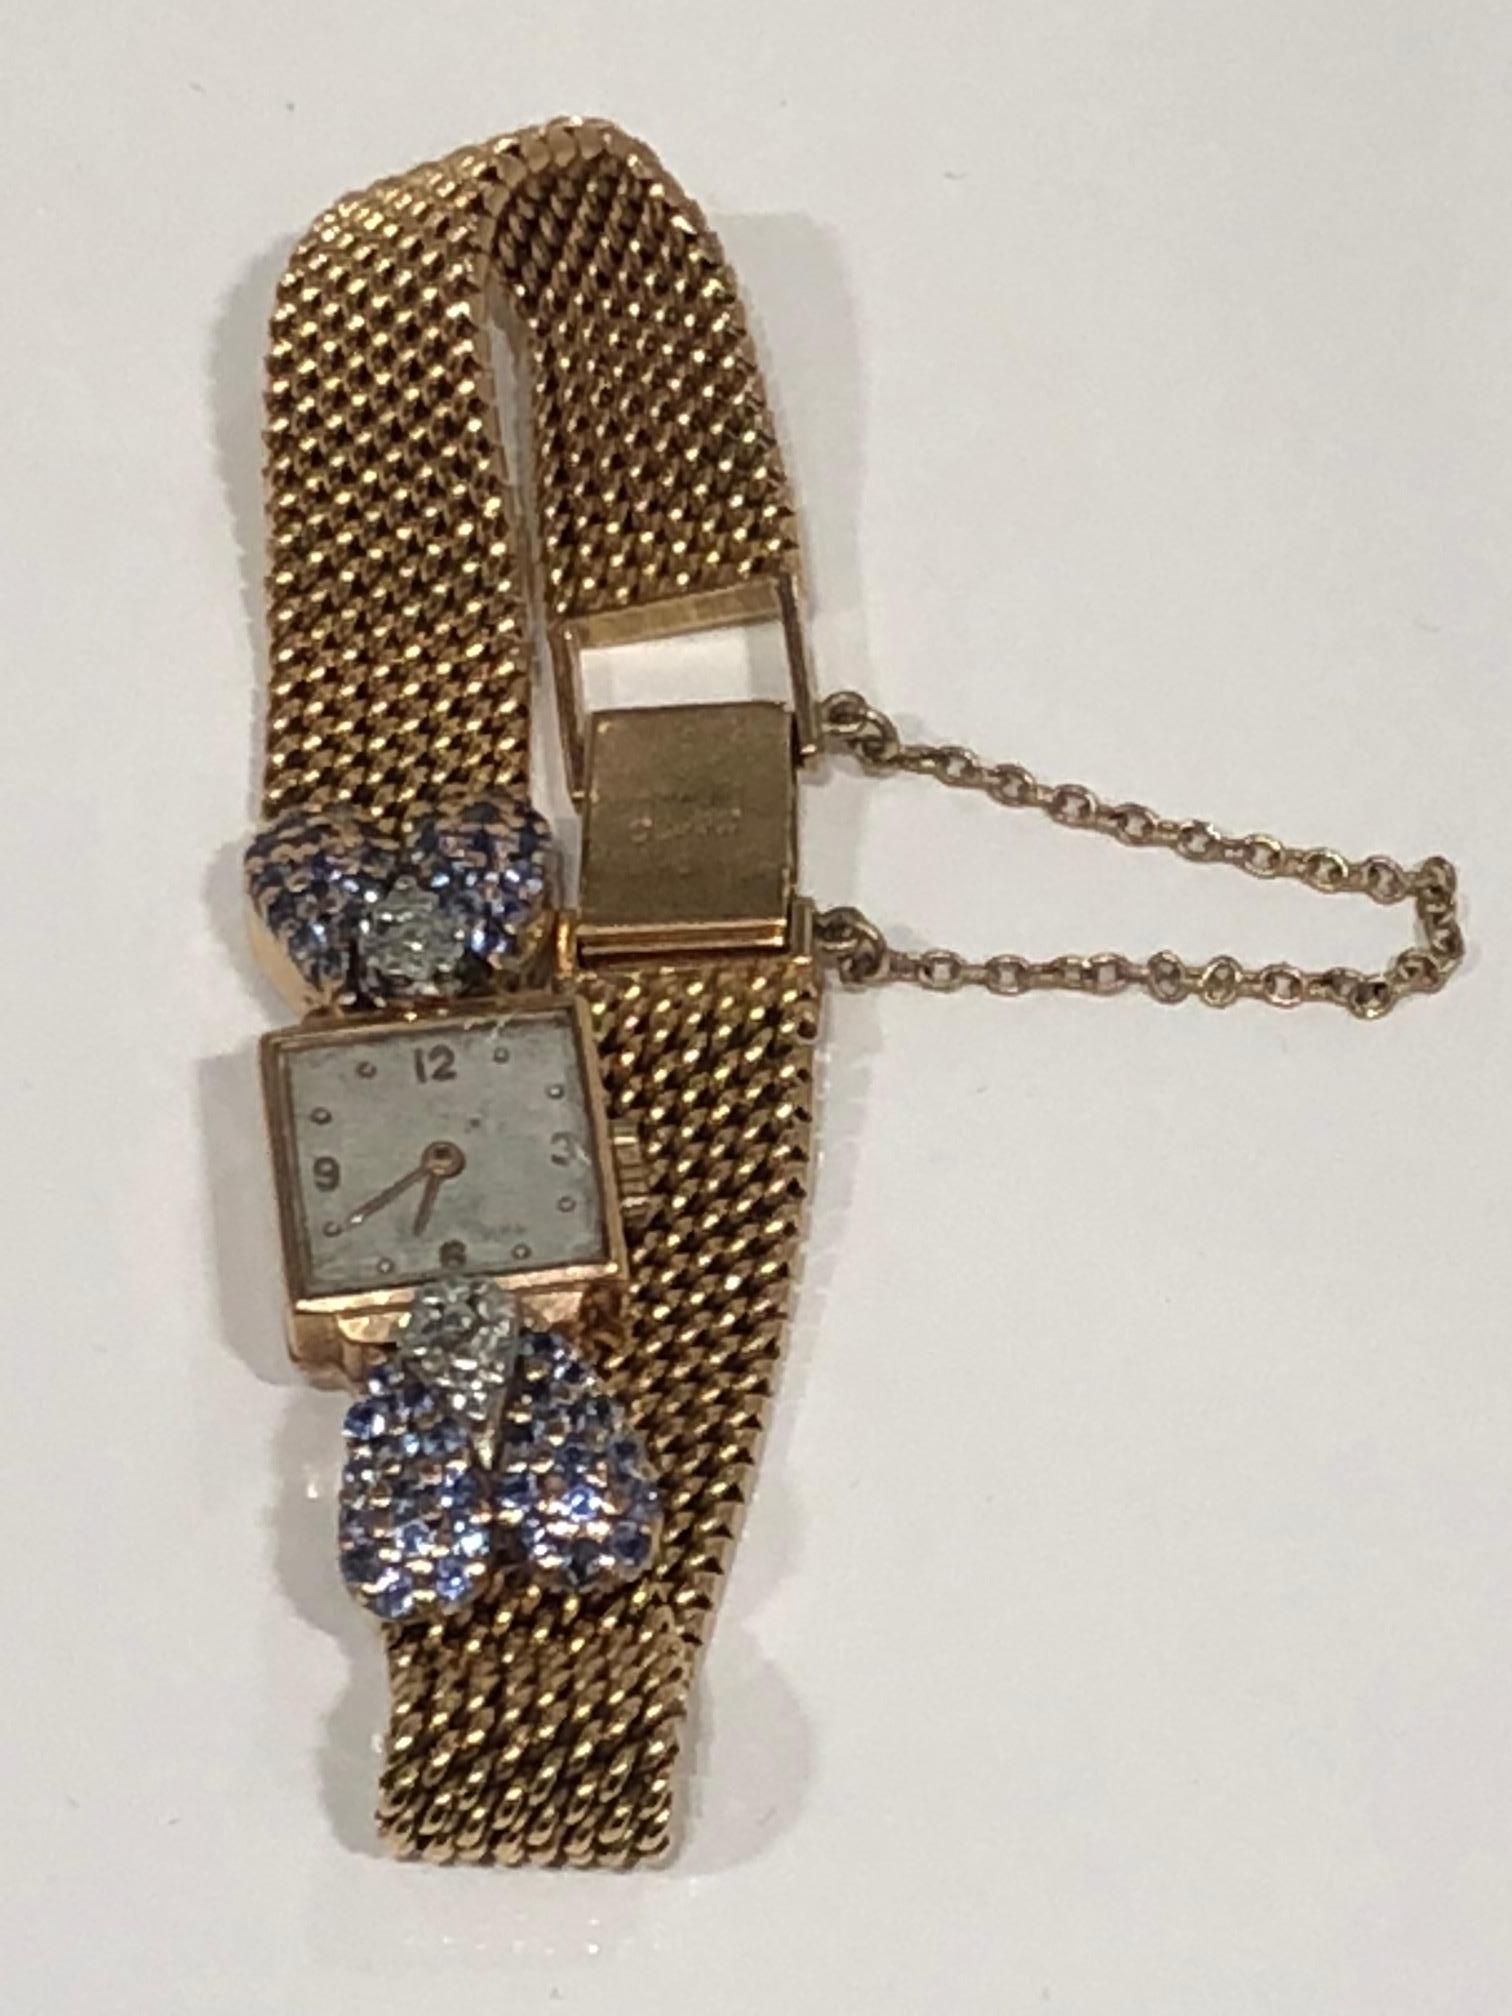 Montre-bracelet vintage pour femme en or 18 carats, cadran carré avec bracelet en chaîne tissée en or avec détails incrustés de diamants et de saphirs de Ceylan, fermoir avec chaîne de sécurité, estampillée et numérotée. circa 1940
La bande de